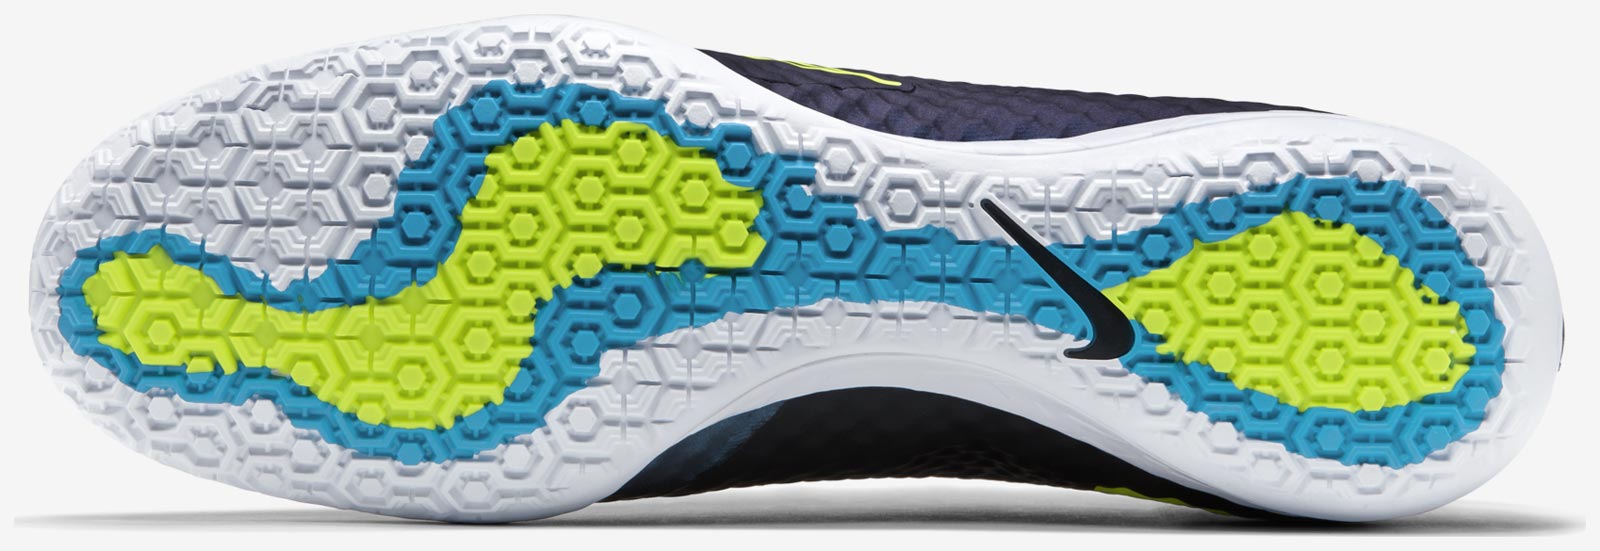 Blue Nike Mercurial X Finale 2015 Boots Released - Footy Headlines